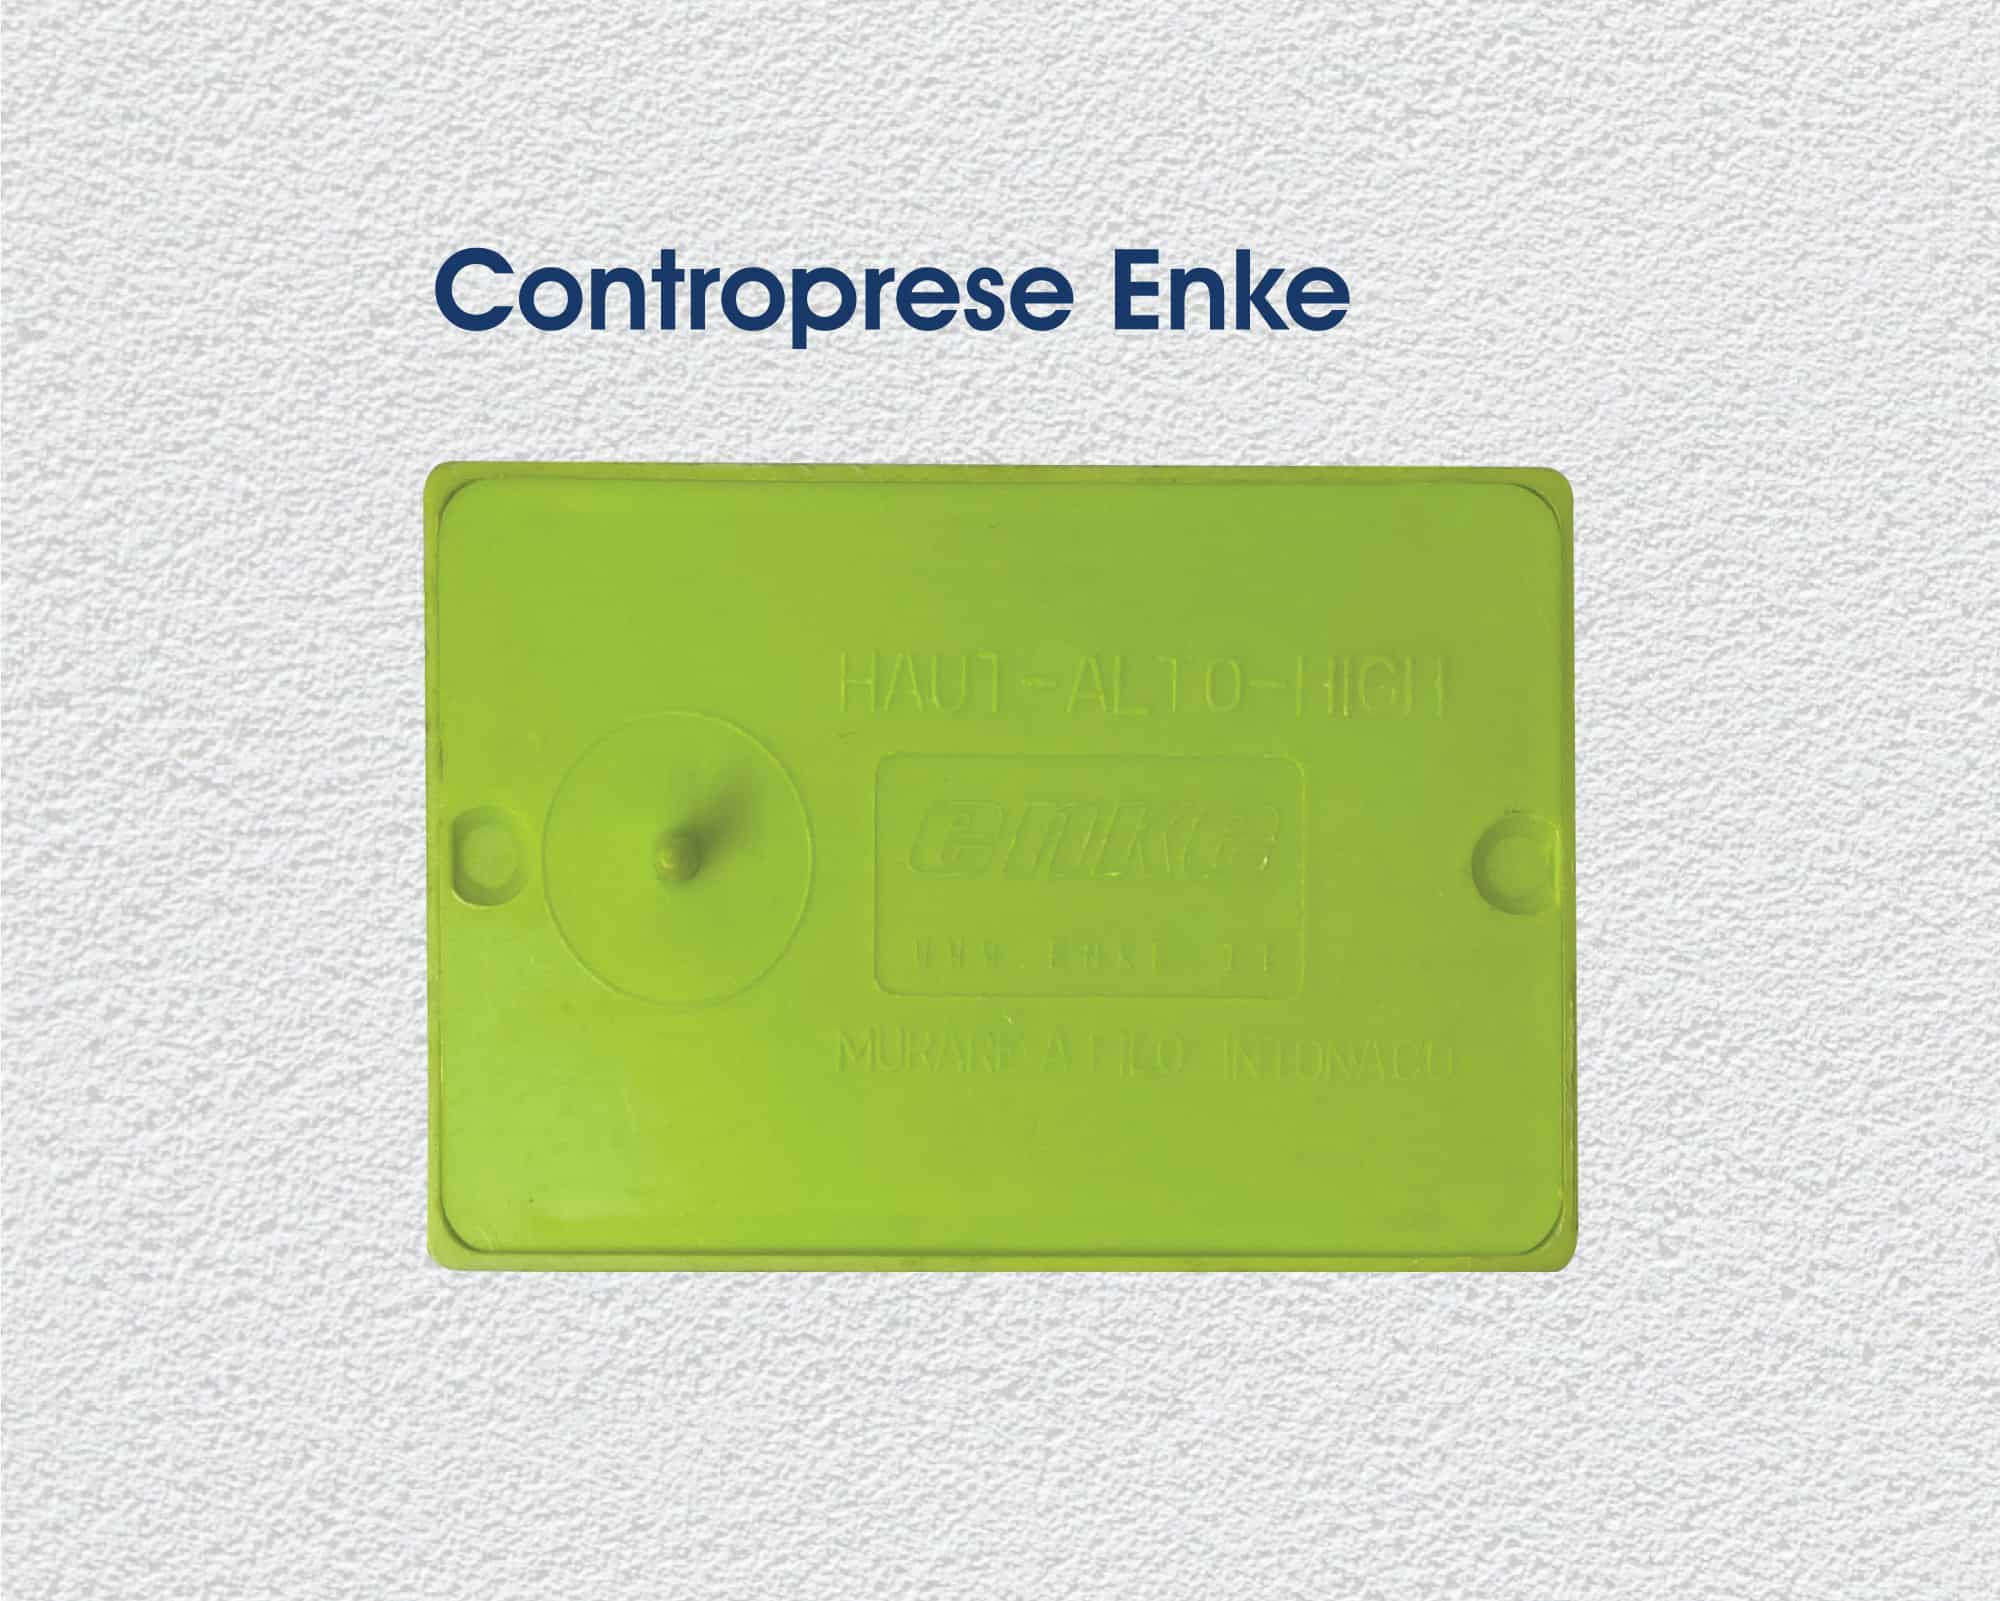 Questa presa può essere installata nelle controprese per aspirapolvere centralizzato Enke. Contropresa aspirazione centralizzata Enke colore verde con coperchio salvaintonaco